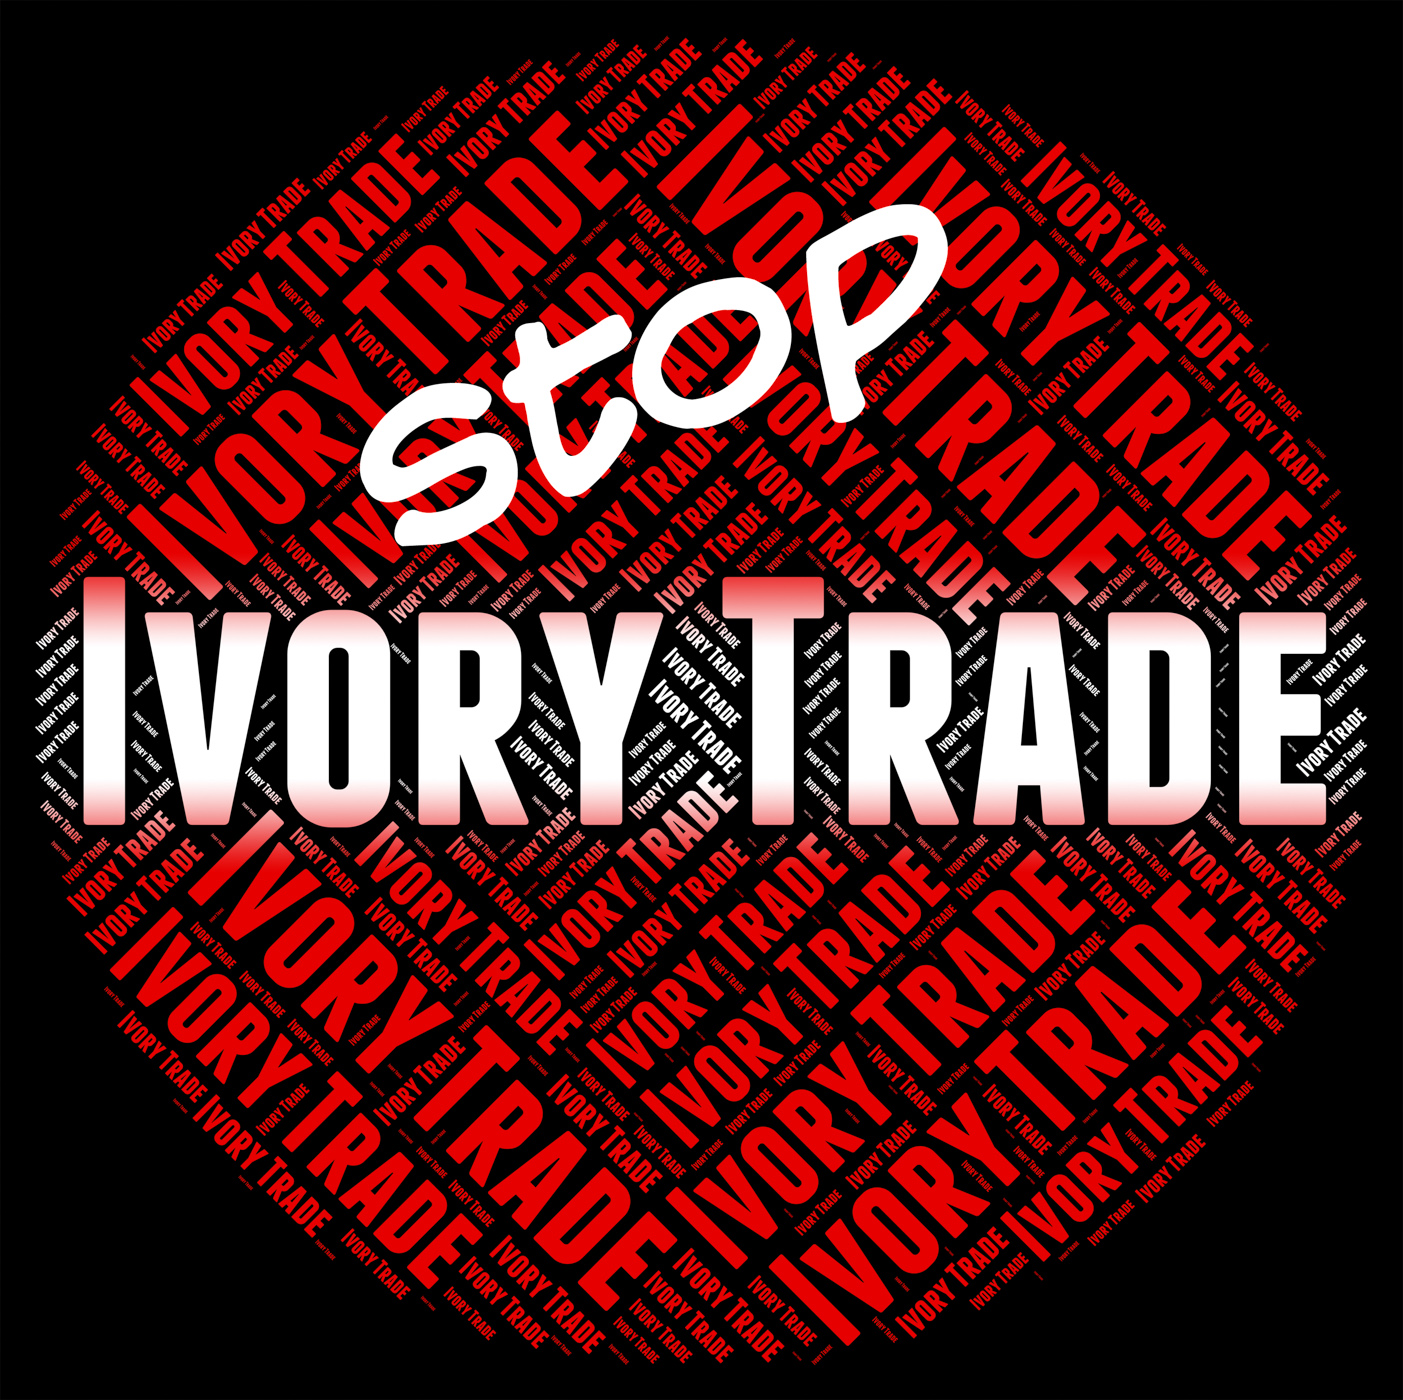 Stop ivory trade indicates elephant teeth and biz photo